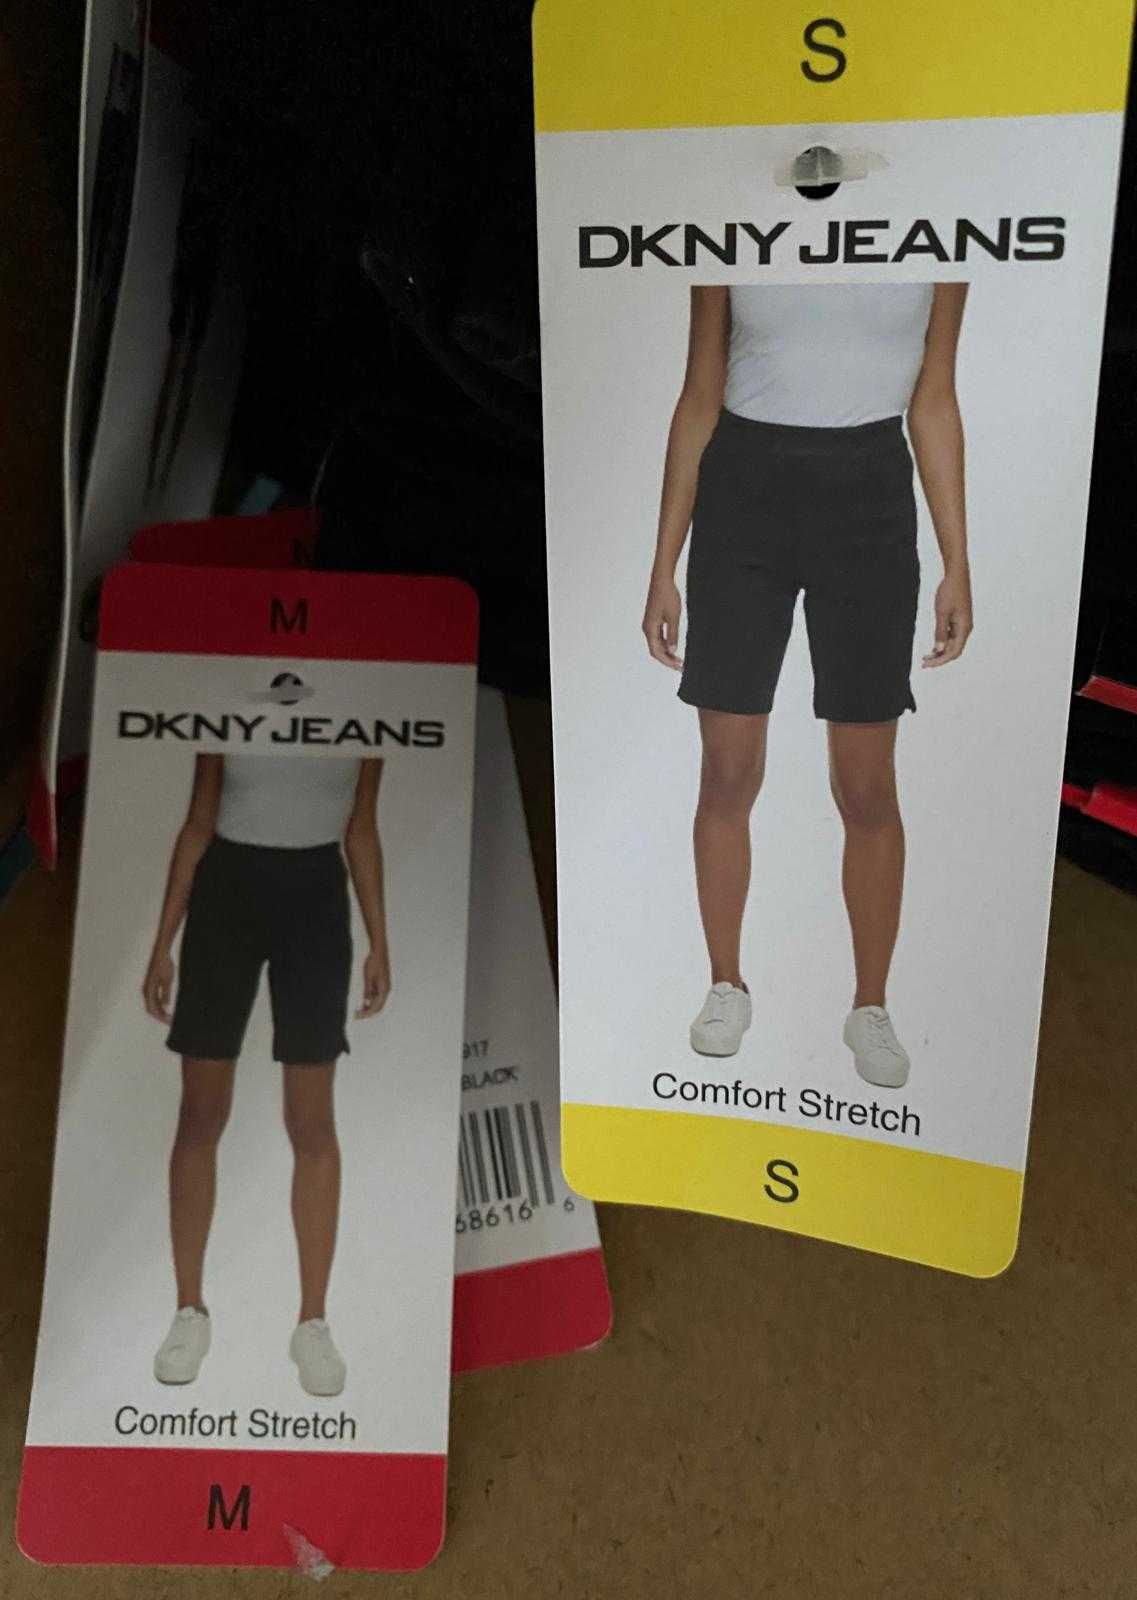 Pantaloni scurti DKNY Jeans elastici confortabili pentru damă S, M